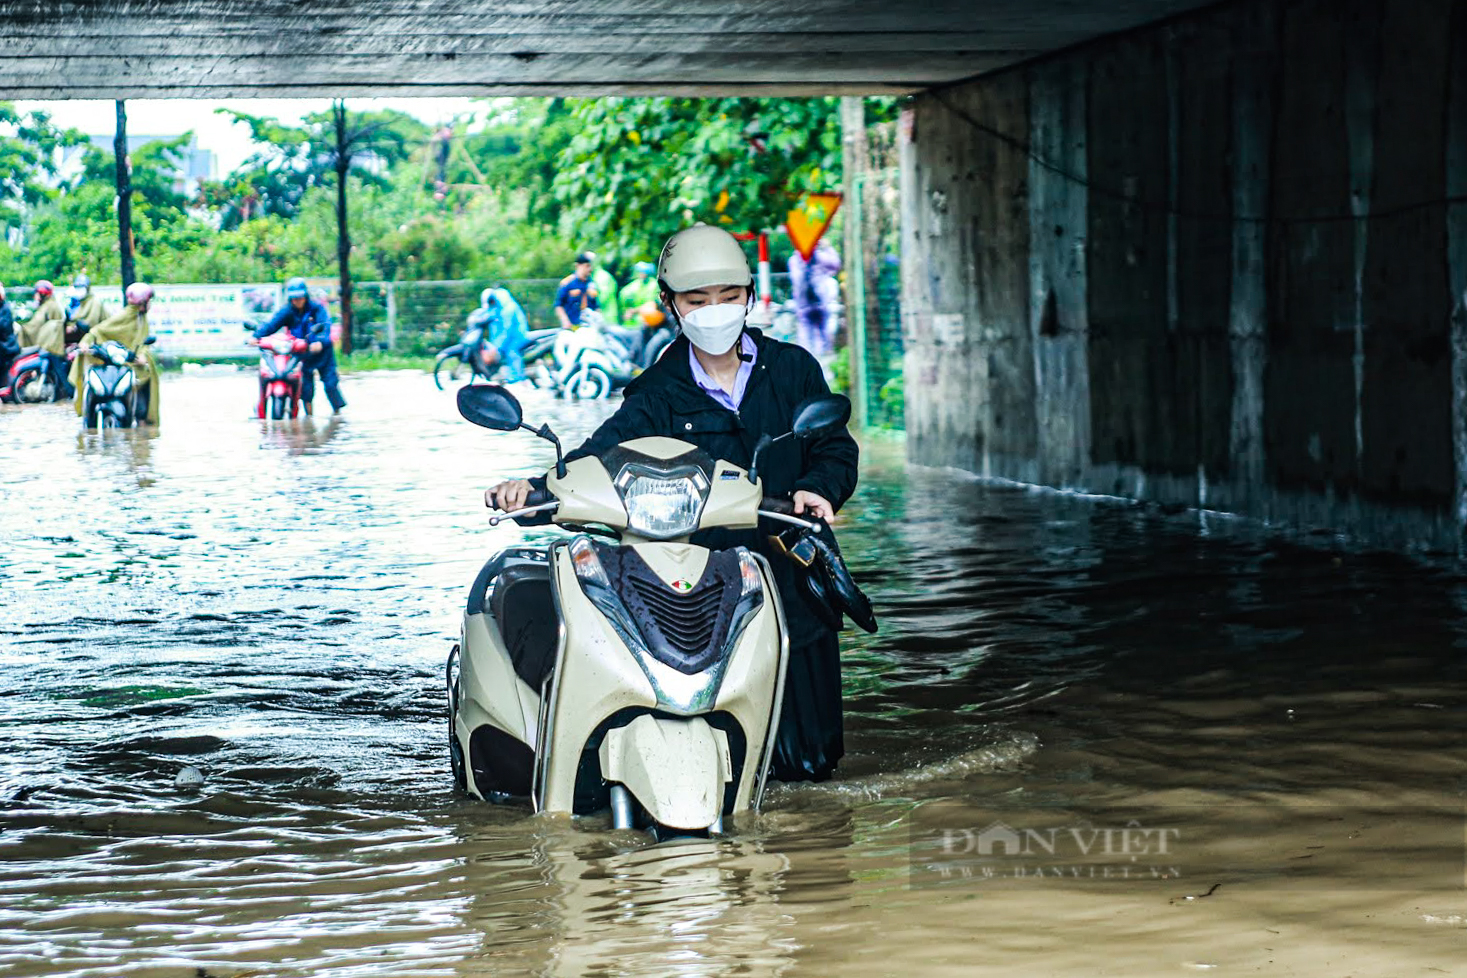 Cận cảnh những điểm đen ở Hà Nội hễ mưa lớn là ngập - Ảnh 14.